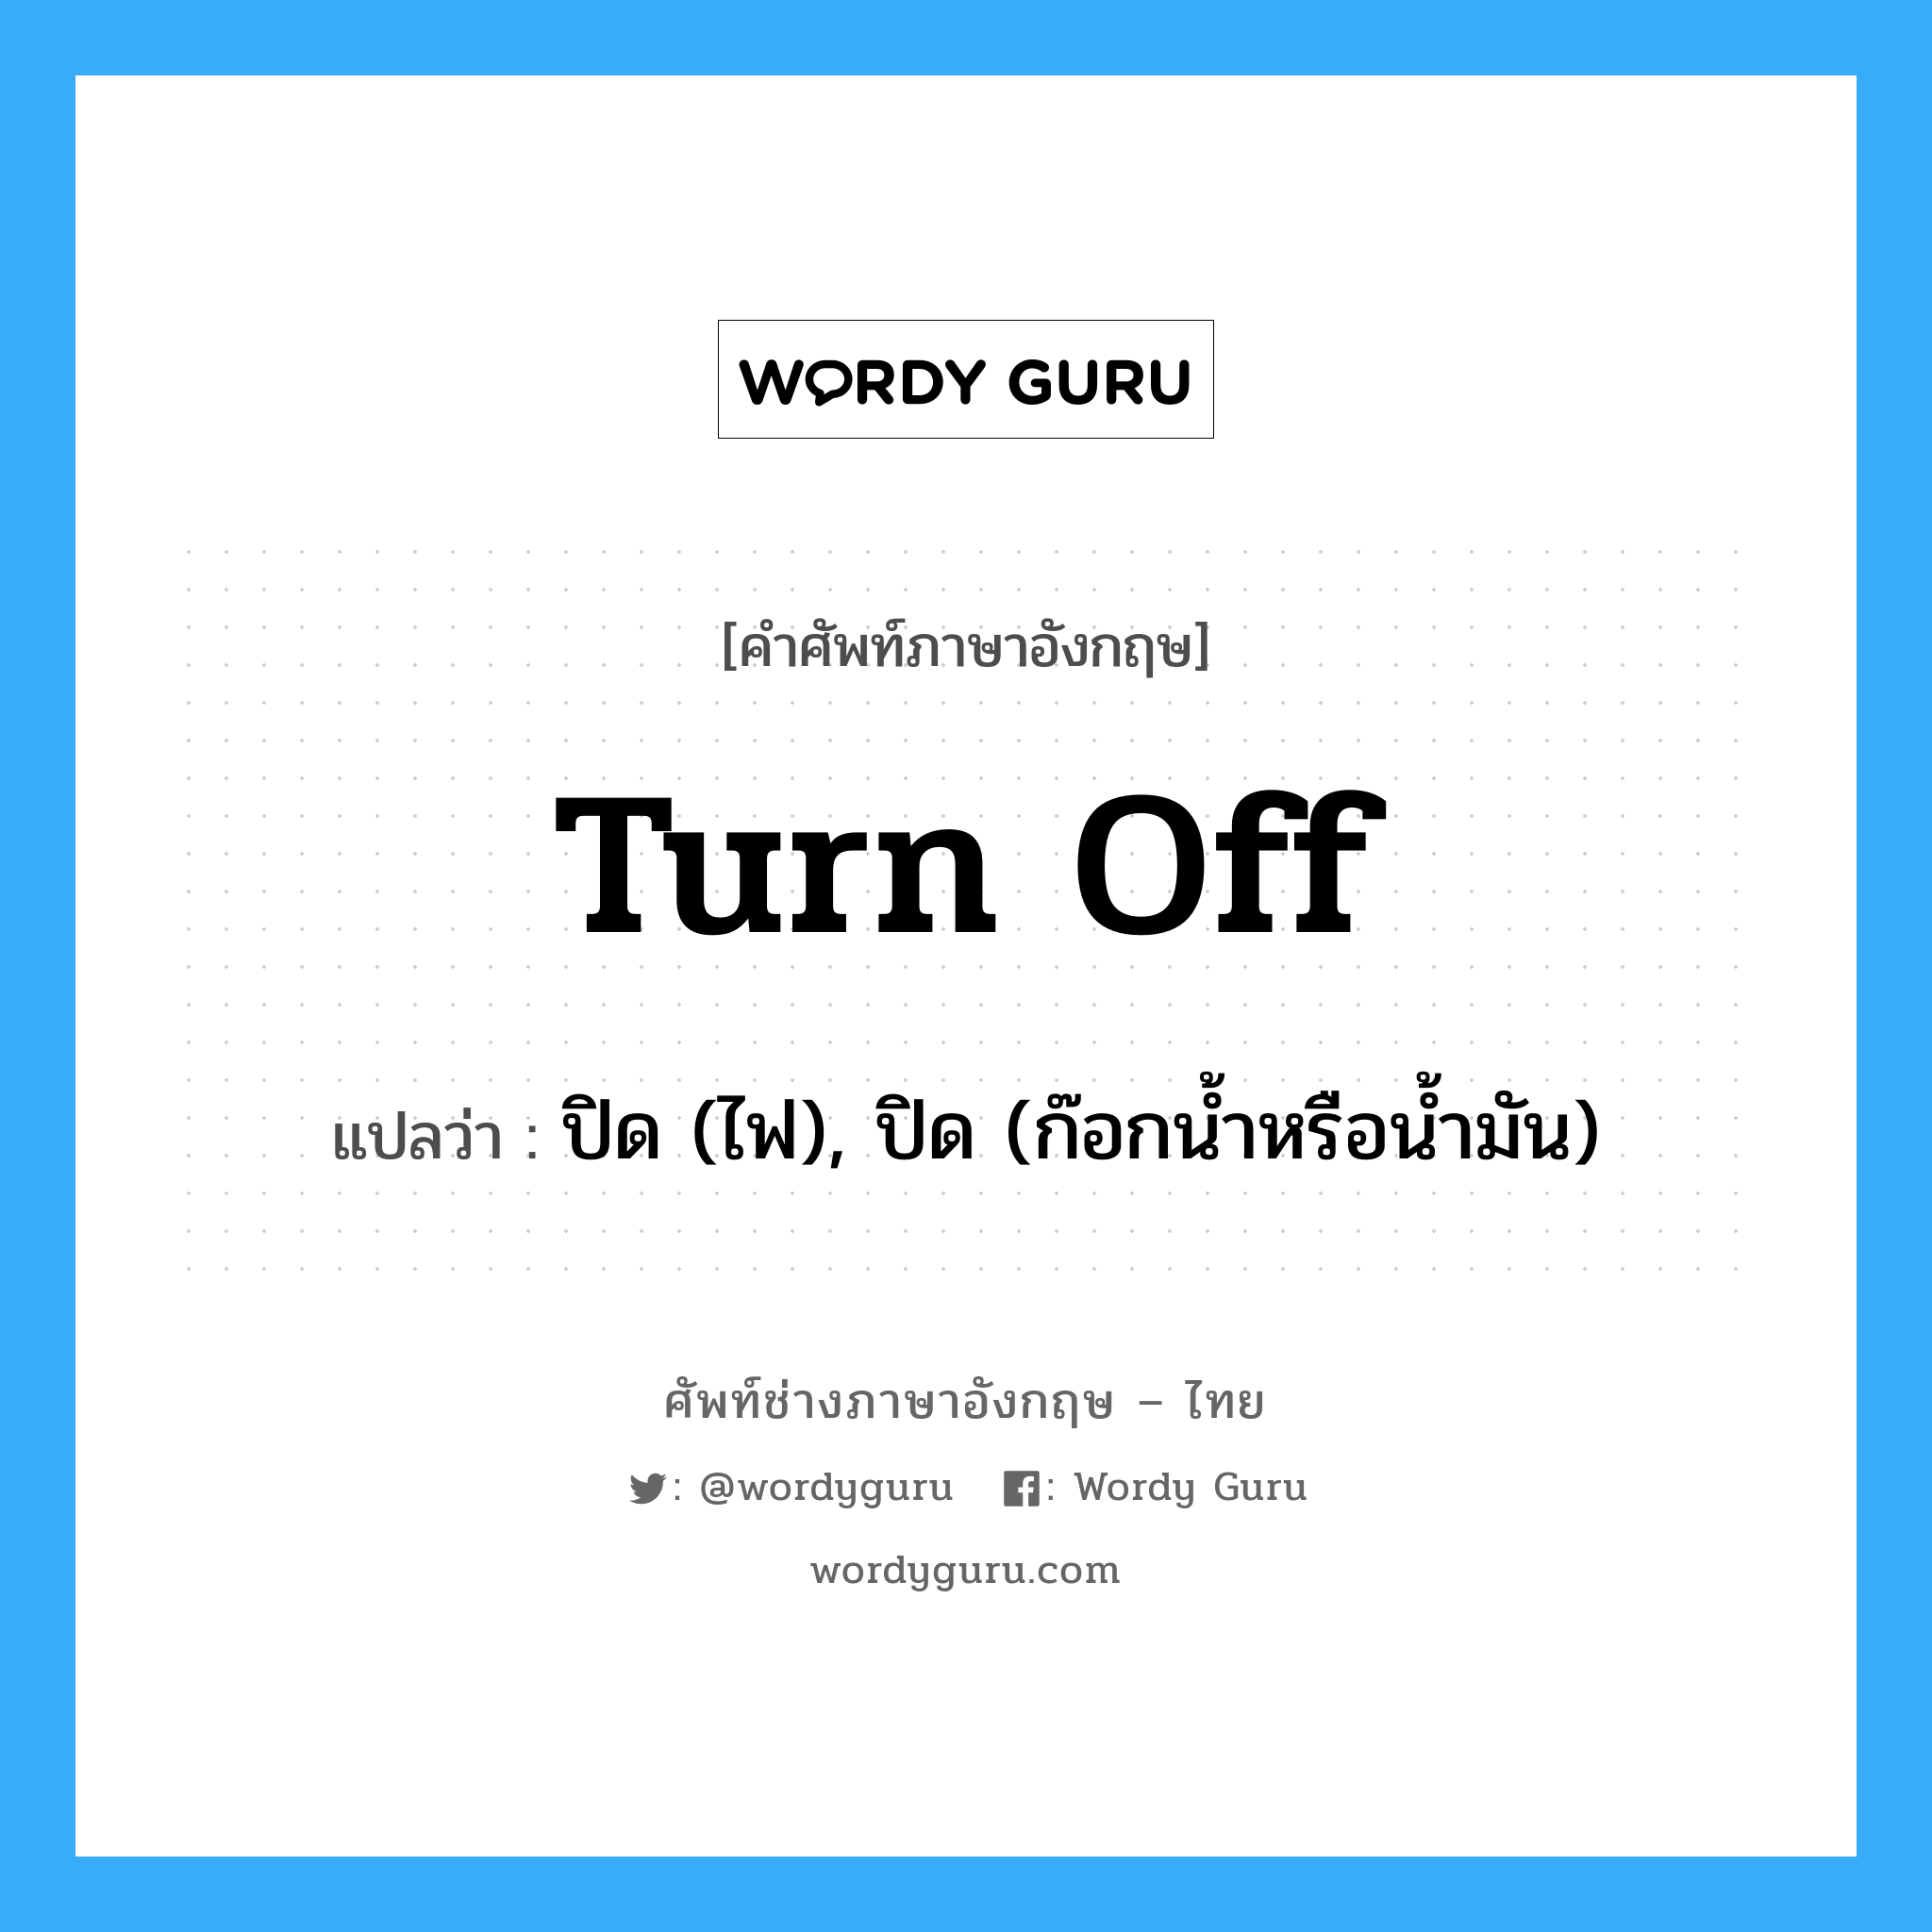 turn off แปลว่า?, คำศัพท์ช่างภาษาอังกฤษ - ไทย turn off คำศัพท์ภาษาอังกฤษ turn off แปลว่า ปิด (ไฟ), ปิด (ก๊อกน้ำหรือน้ำมัน)